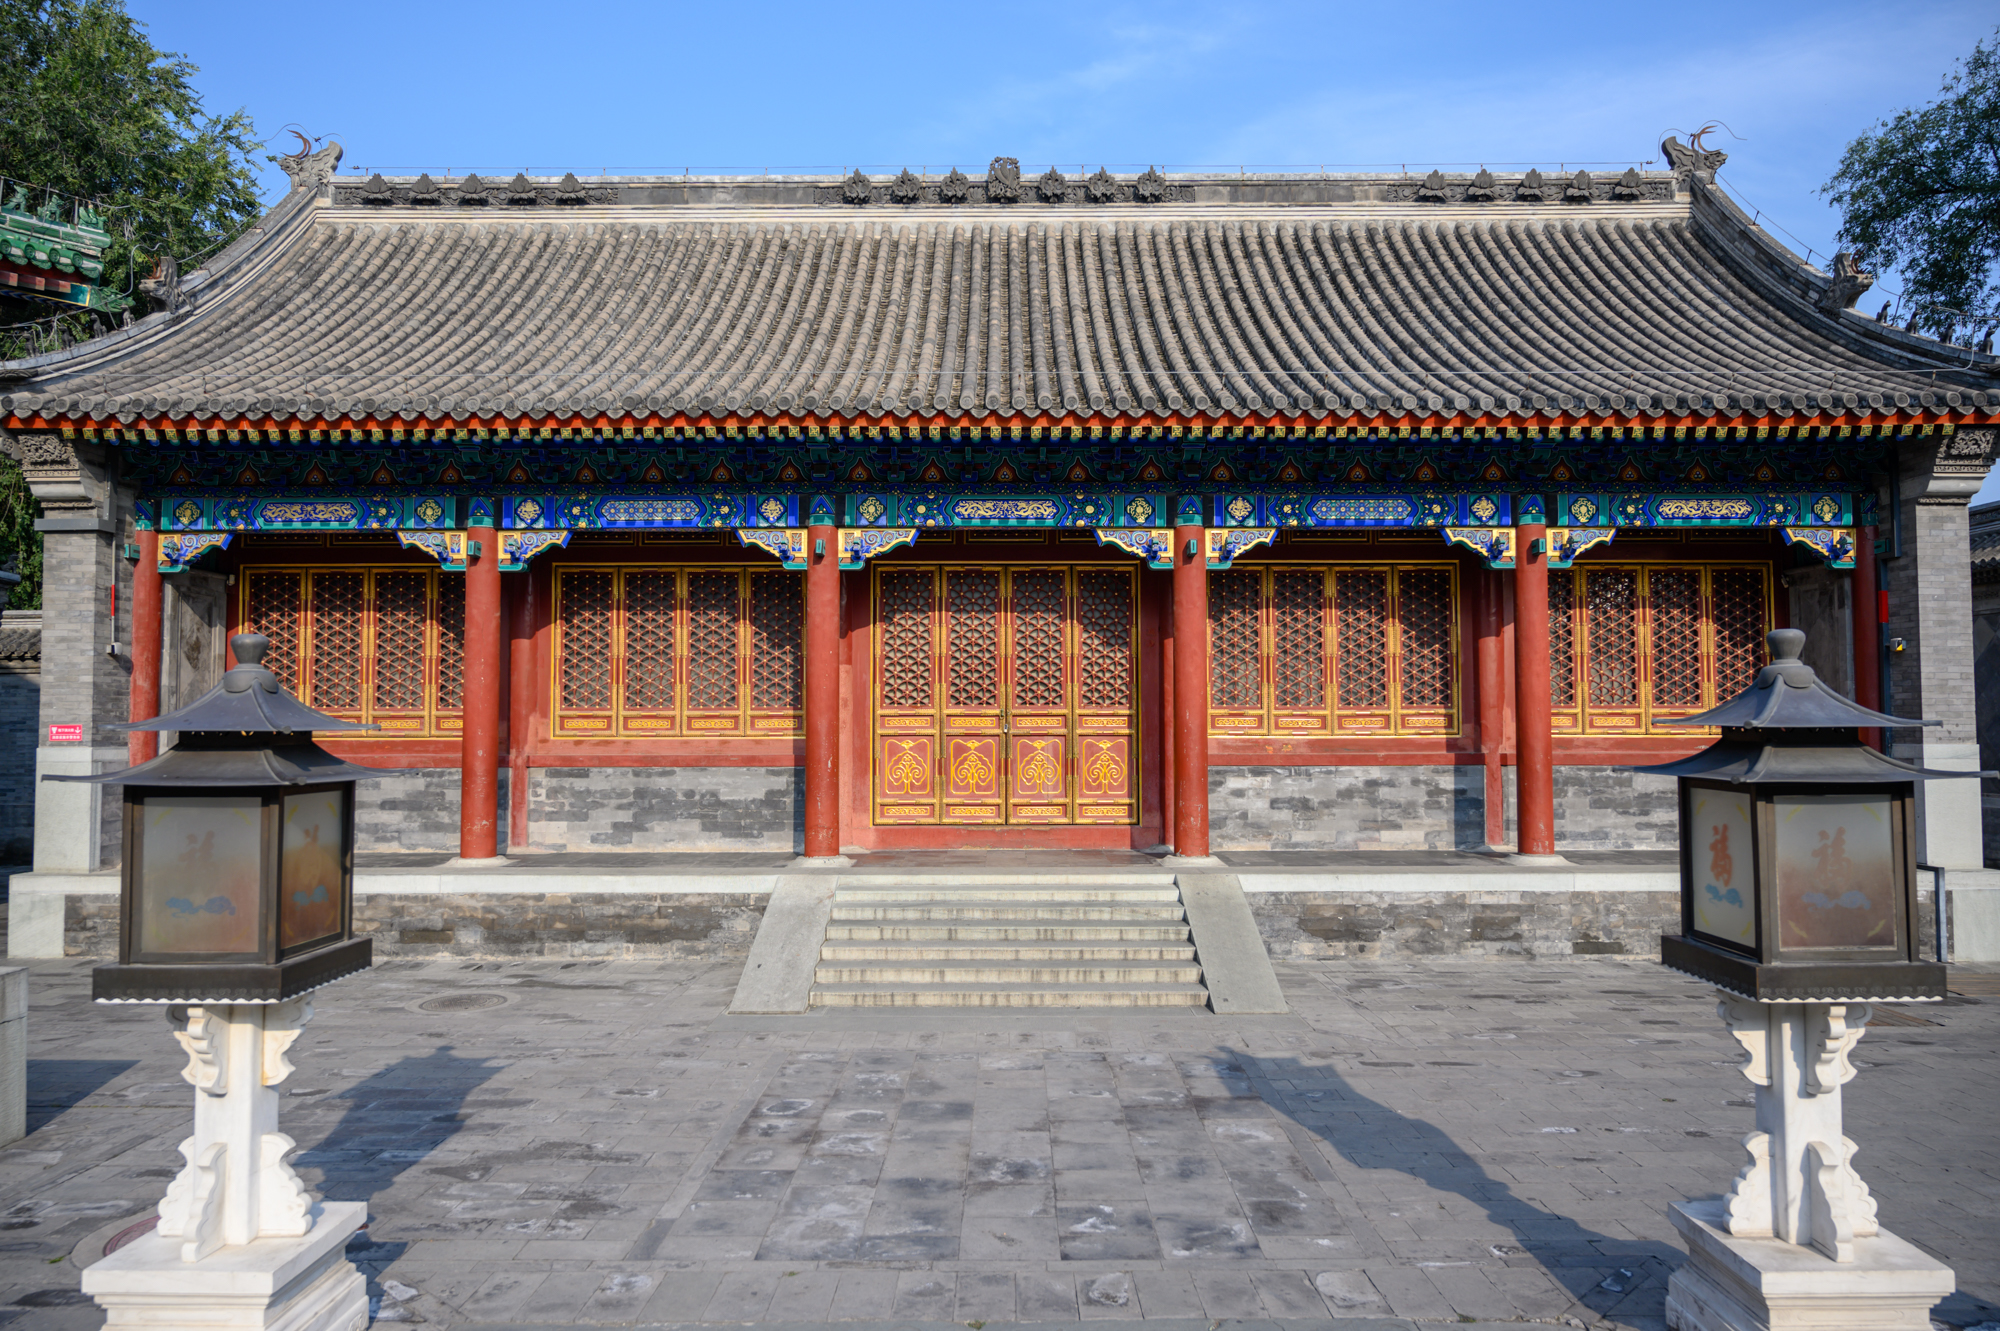 原创中国唯一对外开放的清代王府京城第一佳山水建筑规格堪比皇宫